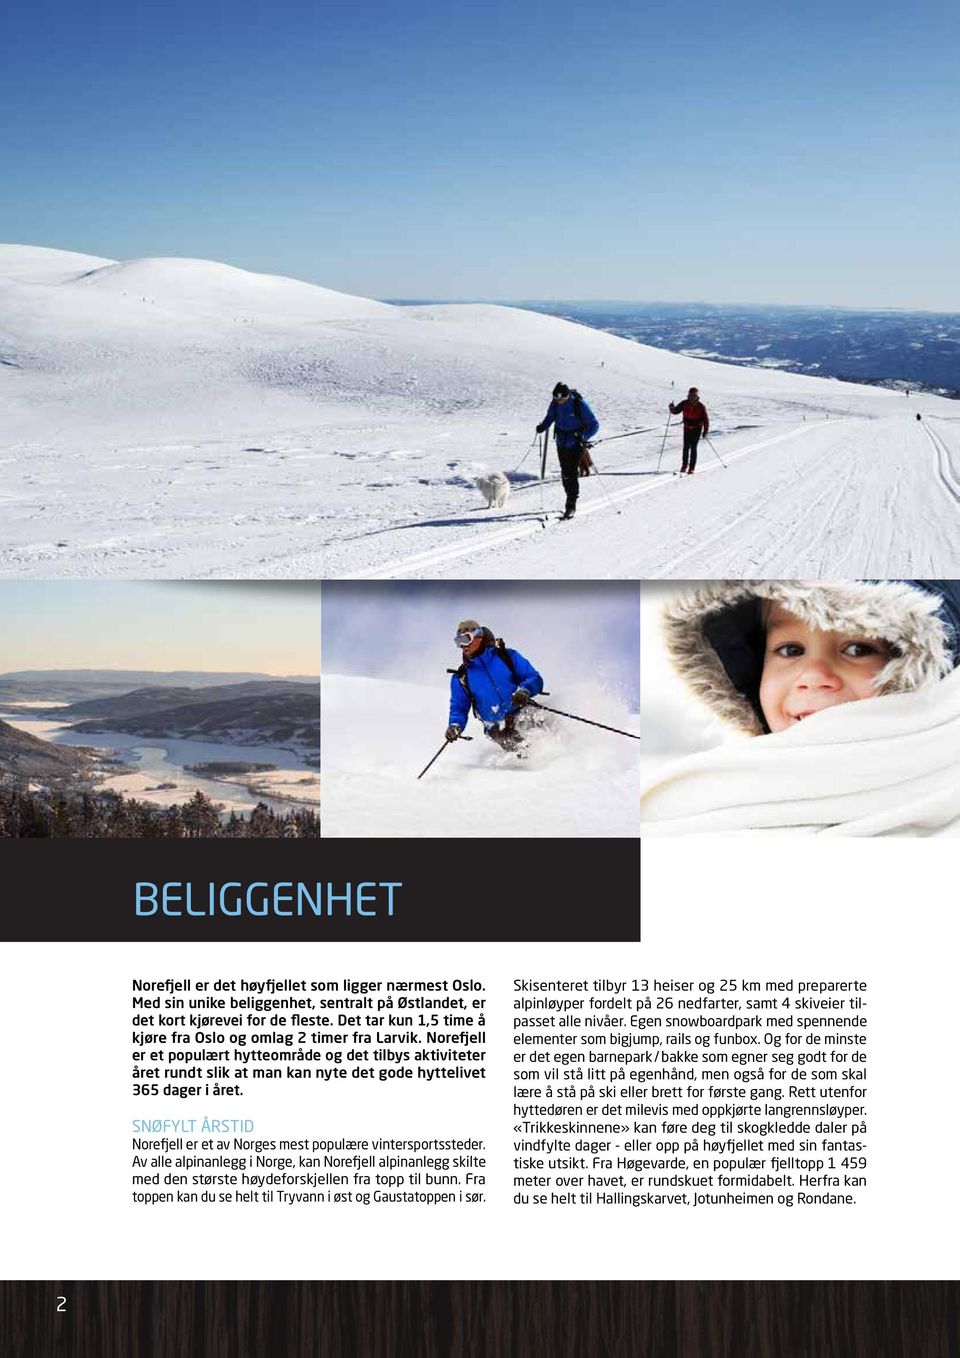 SNØFYLT ÅRSTID Norefjell er et av Norges mest populære vintersportssteder. Av alle alpinanlegg i Norge, kan Norefjell alpinanlegg skilte med den største høydeforskjellen fra topp til bunn.